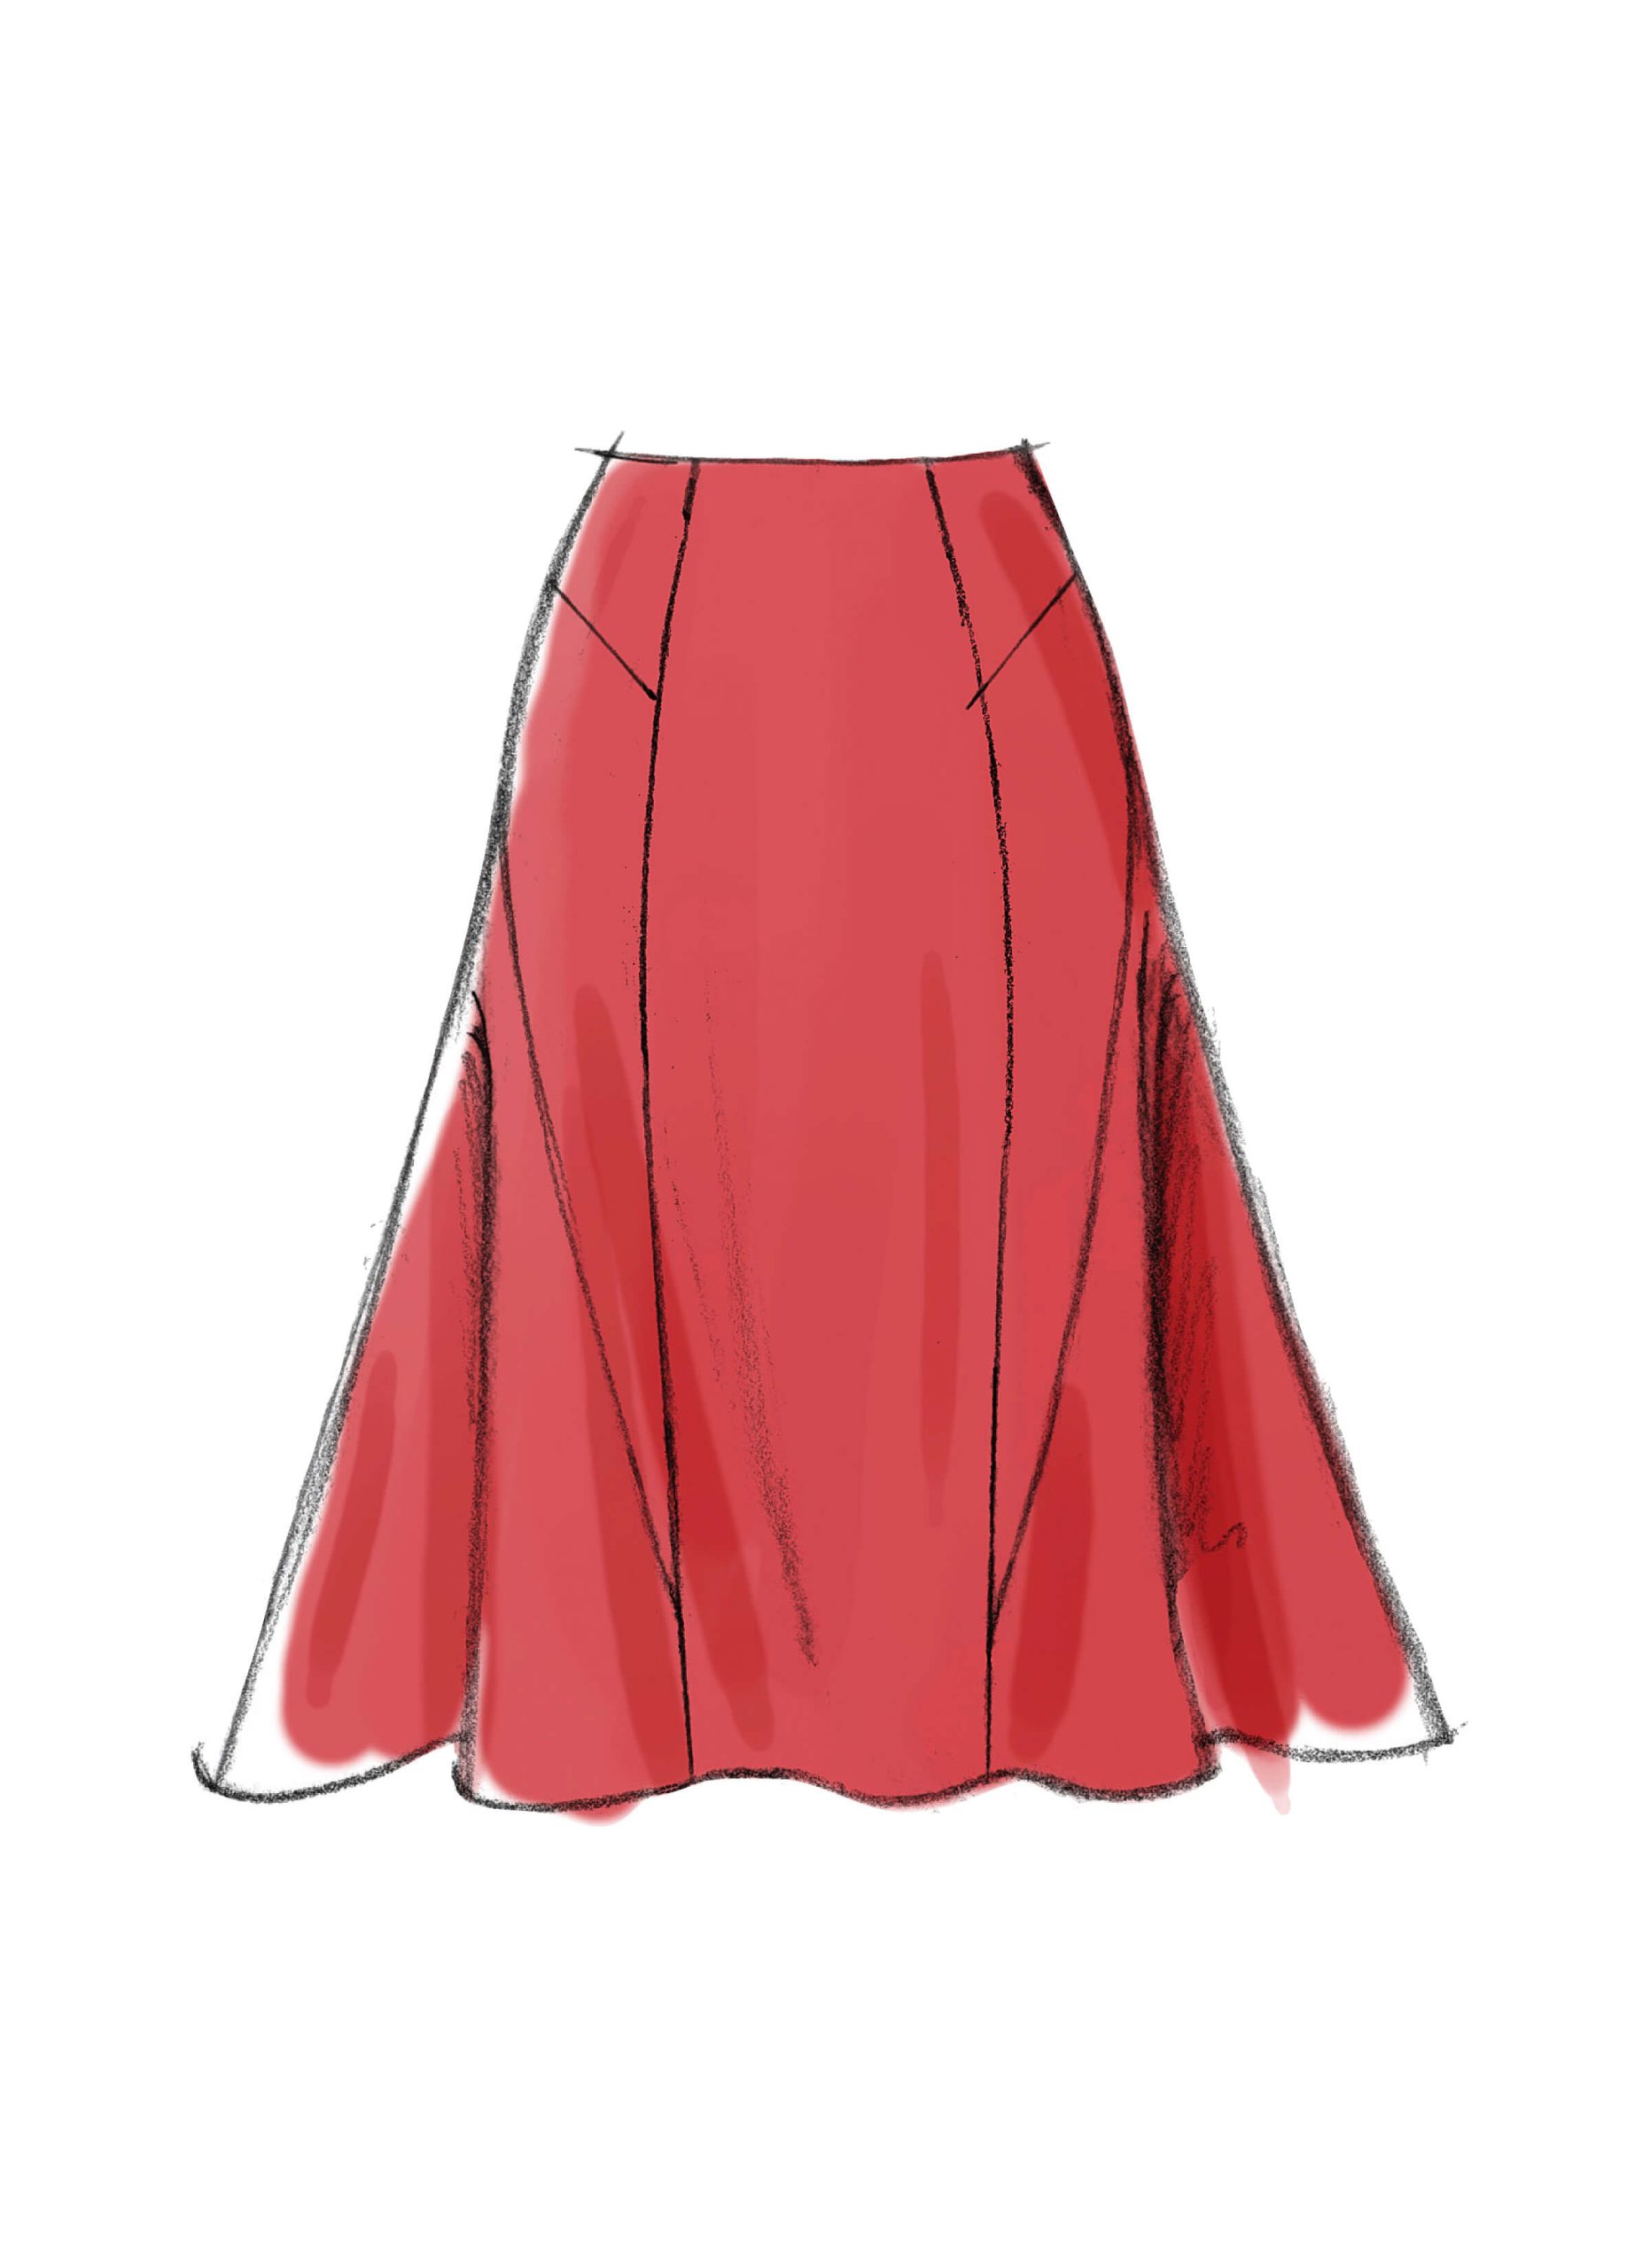 Vogue Patterns V8750 Misses' Skirt